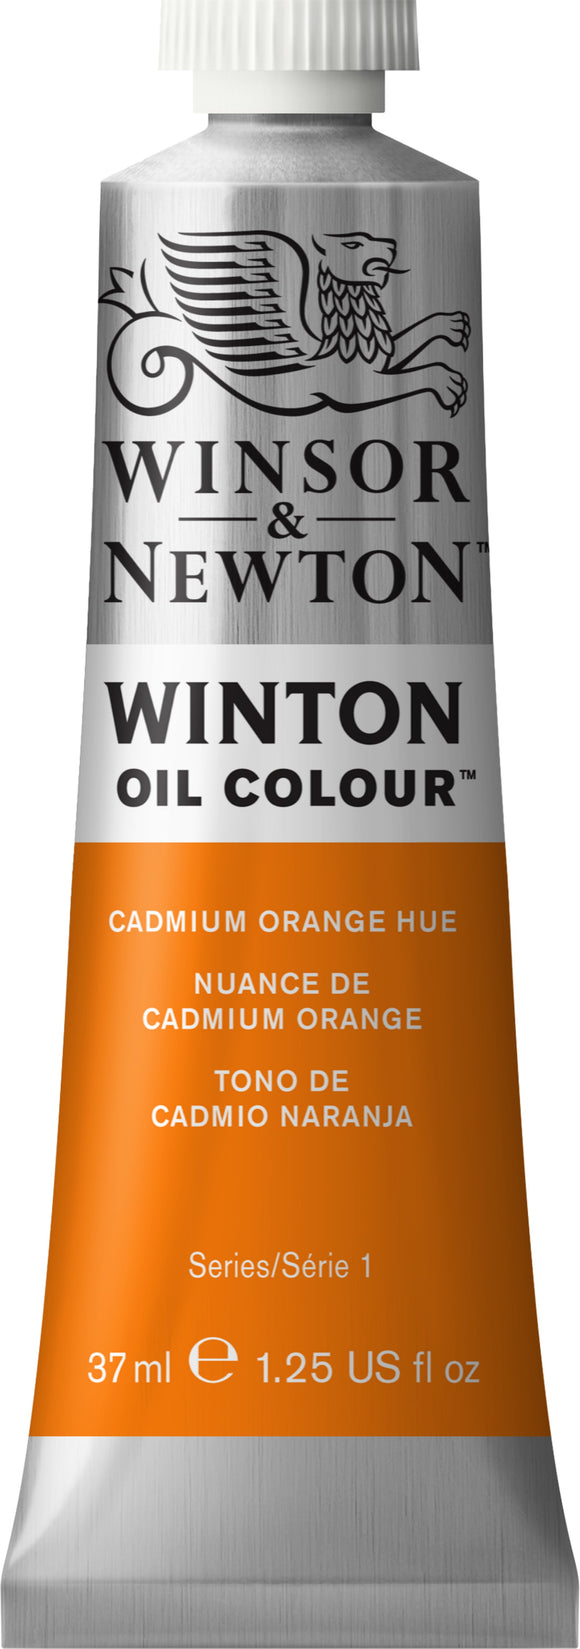 Winsor & Newton Winton Oil Colour Cadmium Orange Hue 37Ml